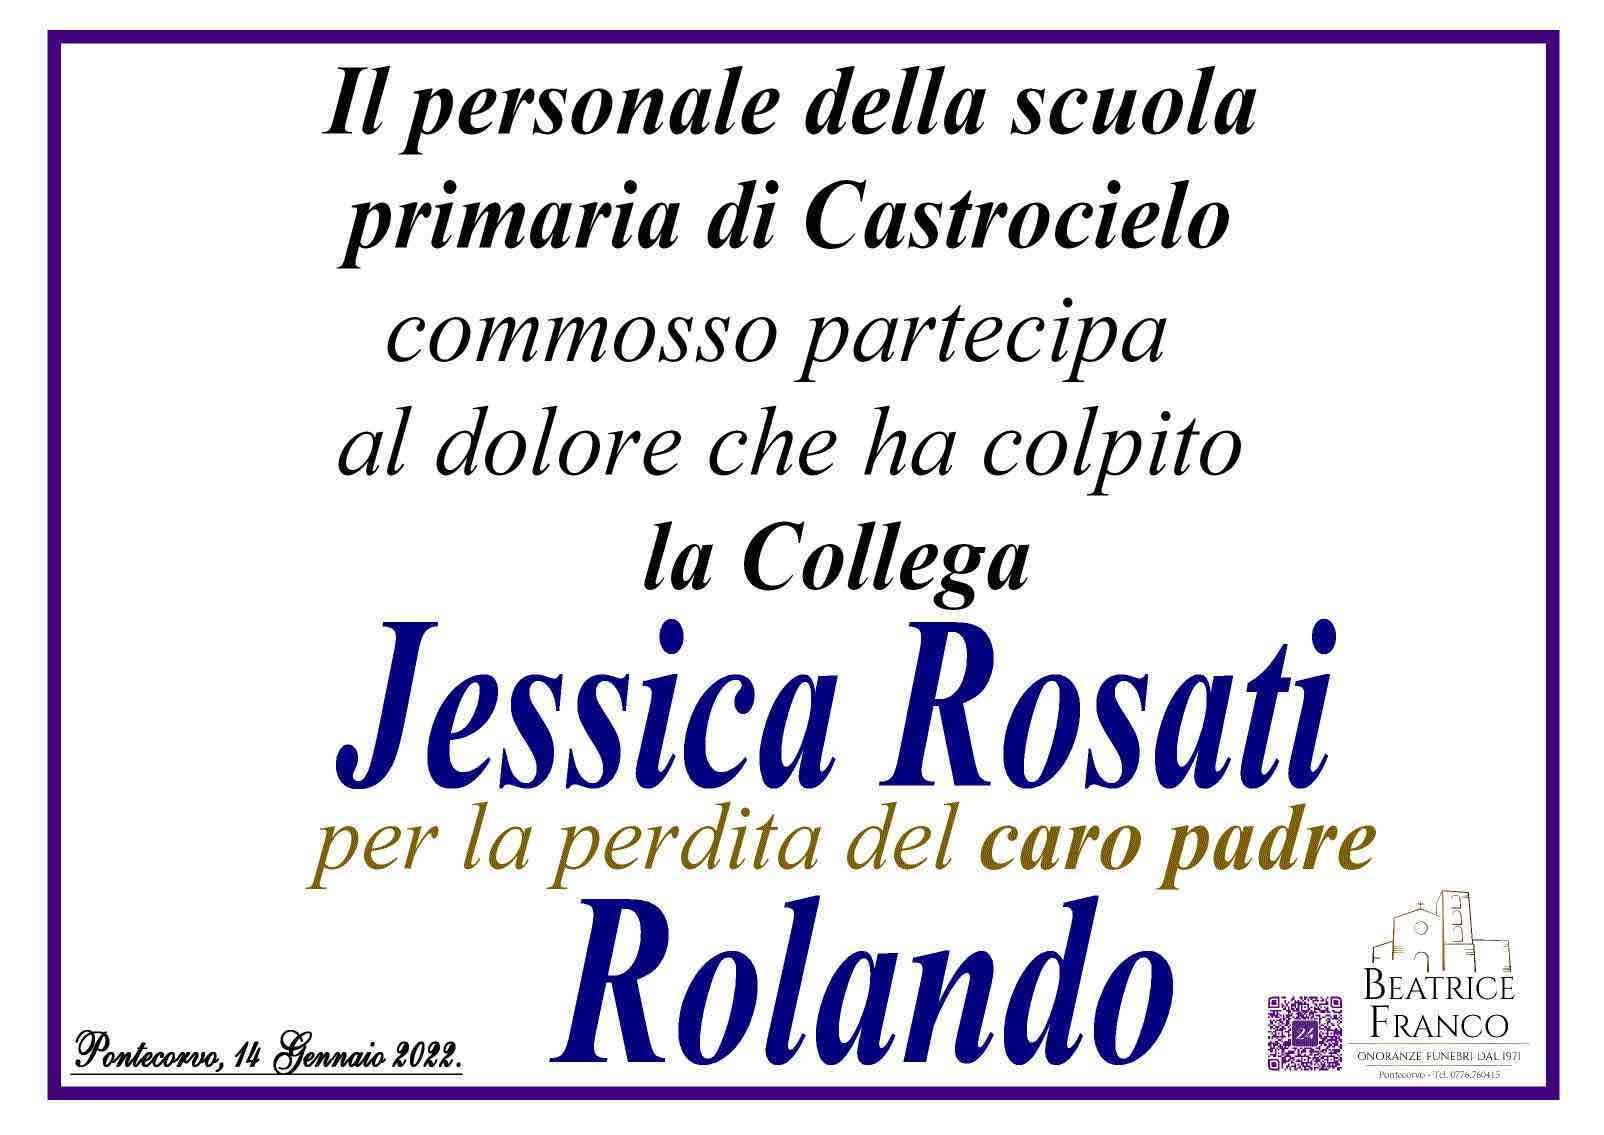 Rolando Rosati